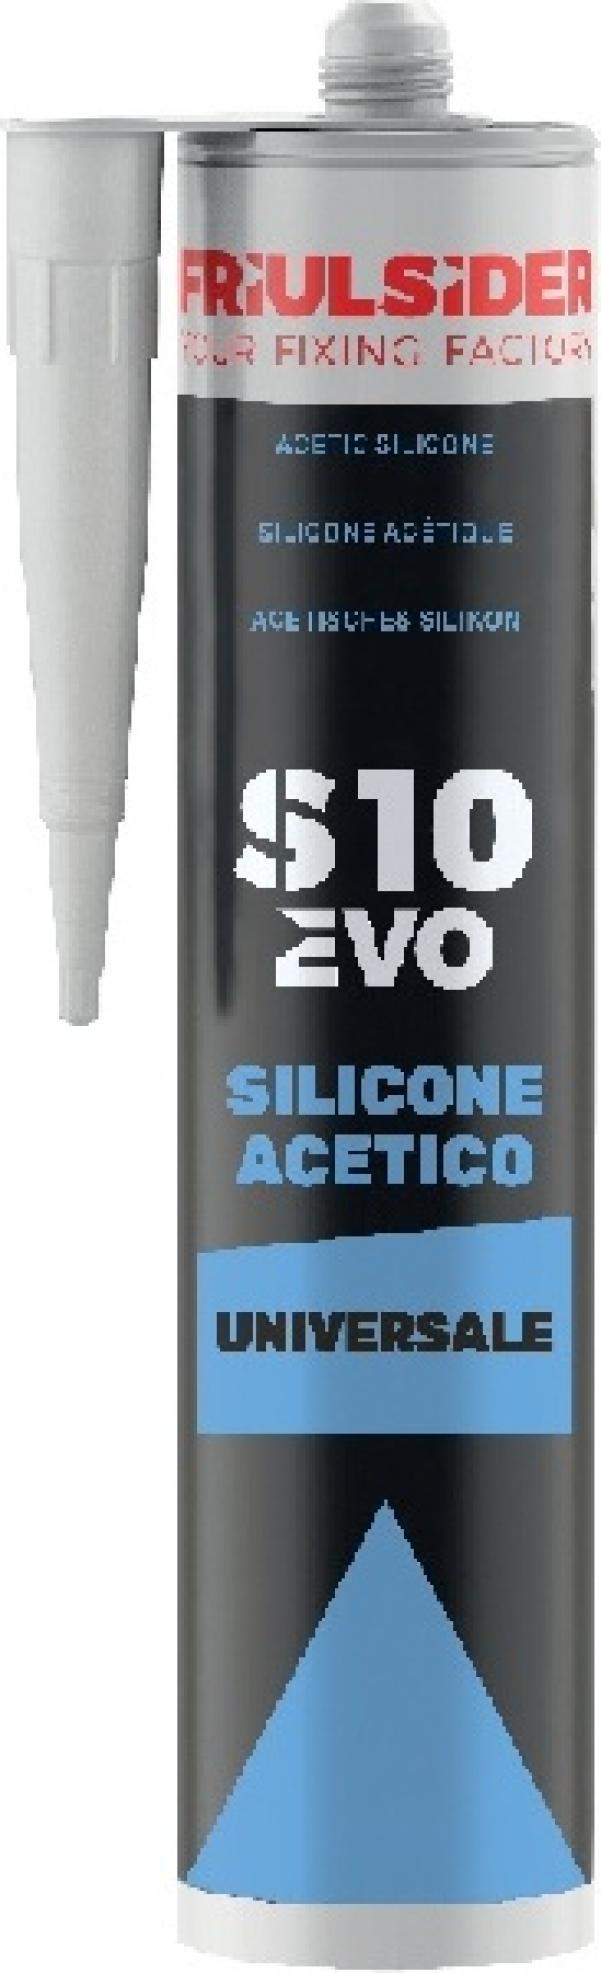 FRIULSIDER Silicone acetico trasparente S10 EVO 280 ml Friulsider